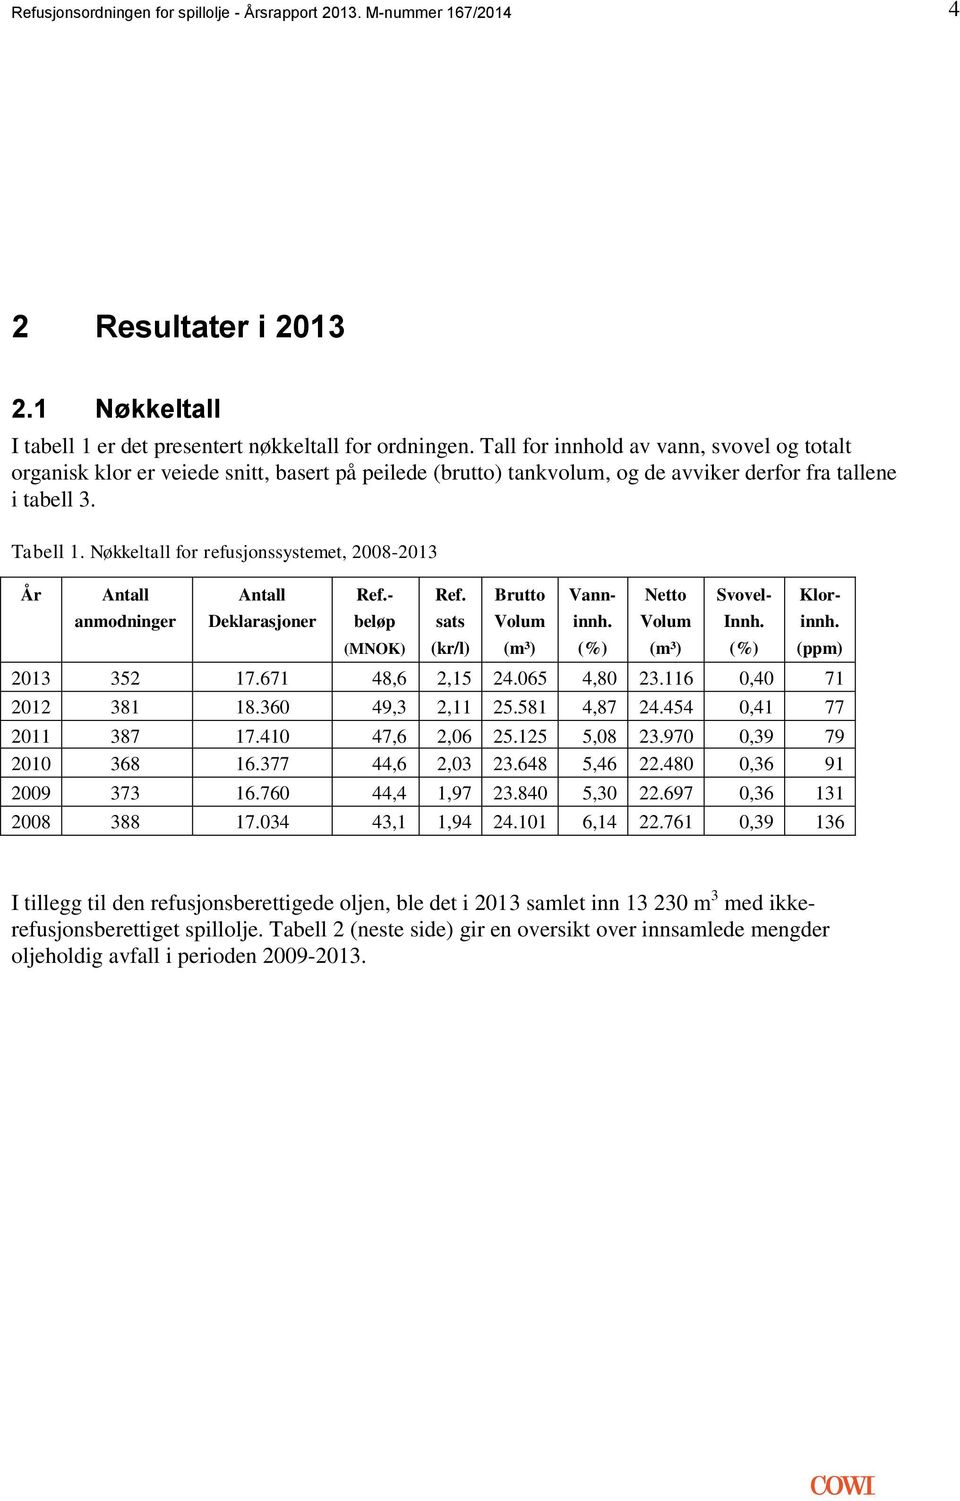 Nøkkeltall for refusjonssystemet, 2008-2013 År Antall anmodninger Antall Deklarasjoner Ref.- beløp (MNOK) Ref. sats (kr/l) Brutto Volum (m³) Vann- innh. (%) Netto Volum (m³) Svovel- Innh.